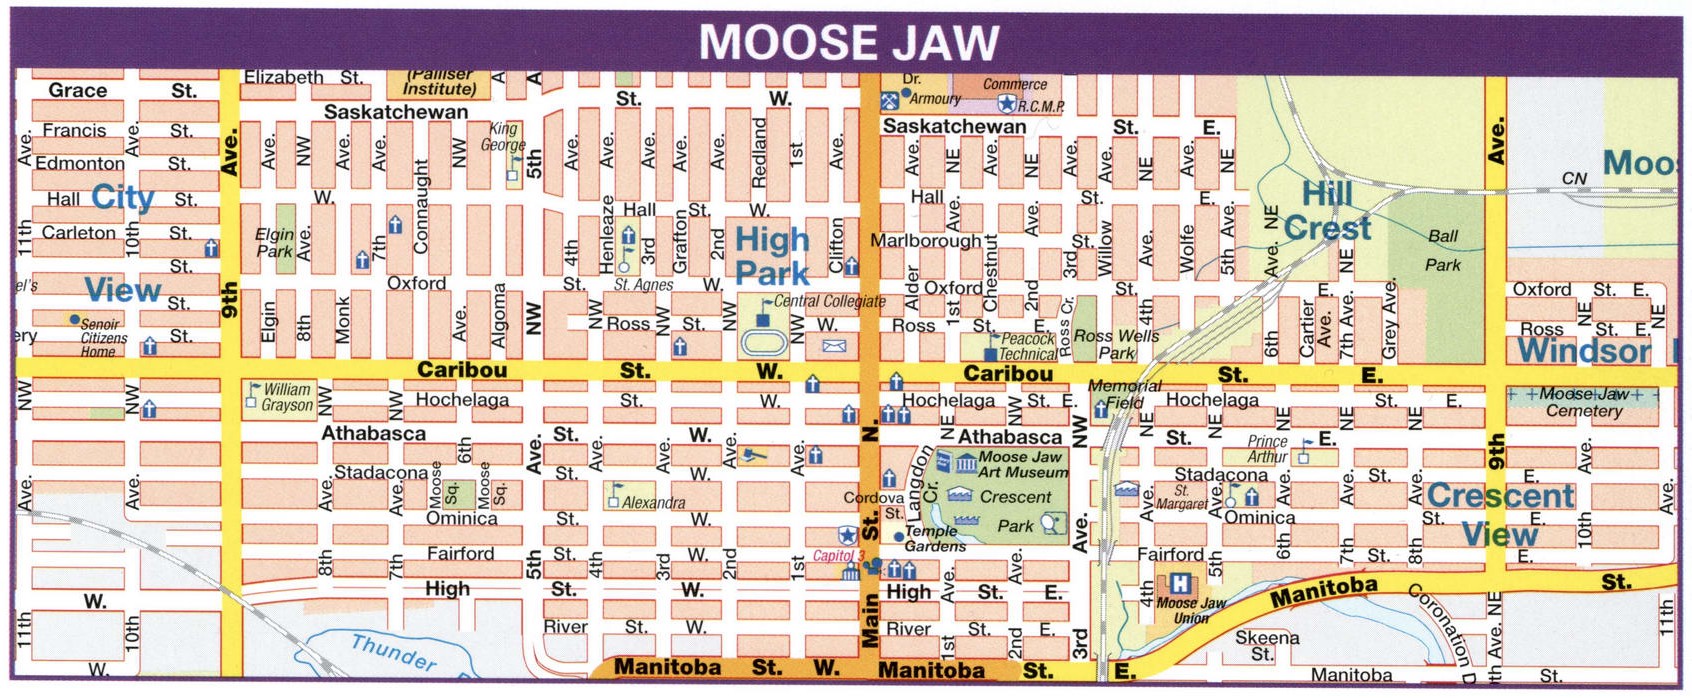 Moose Jaw road map